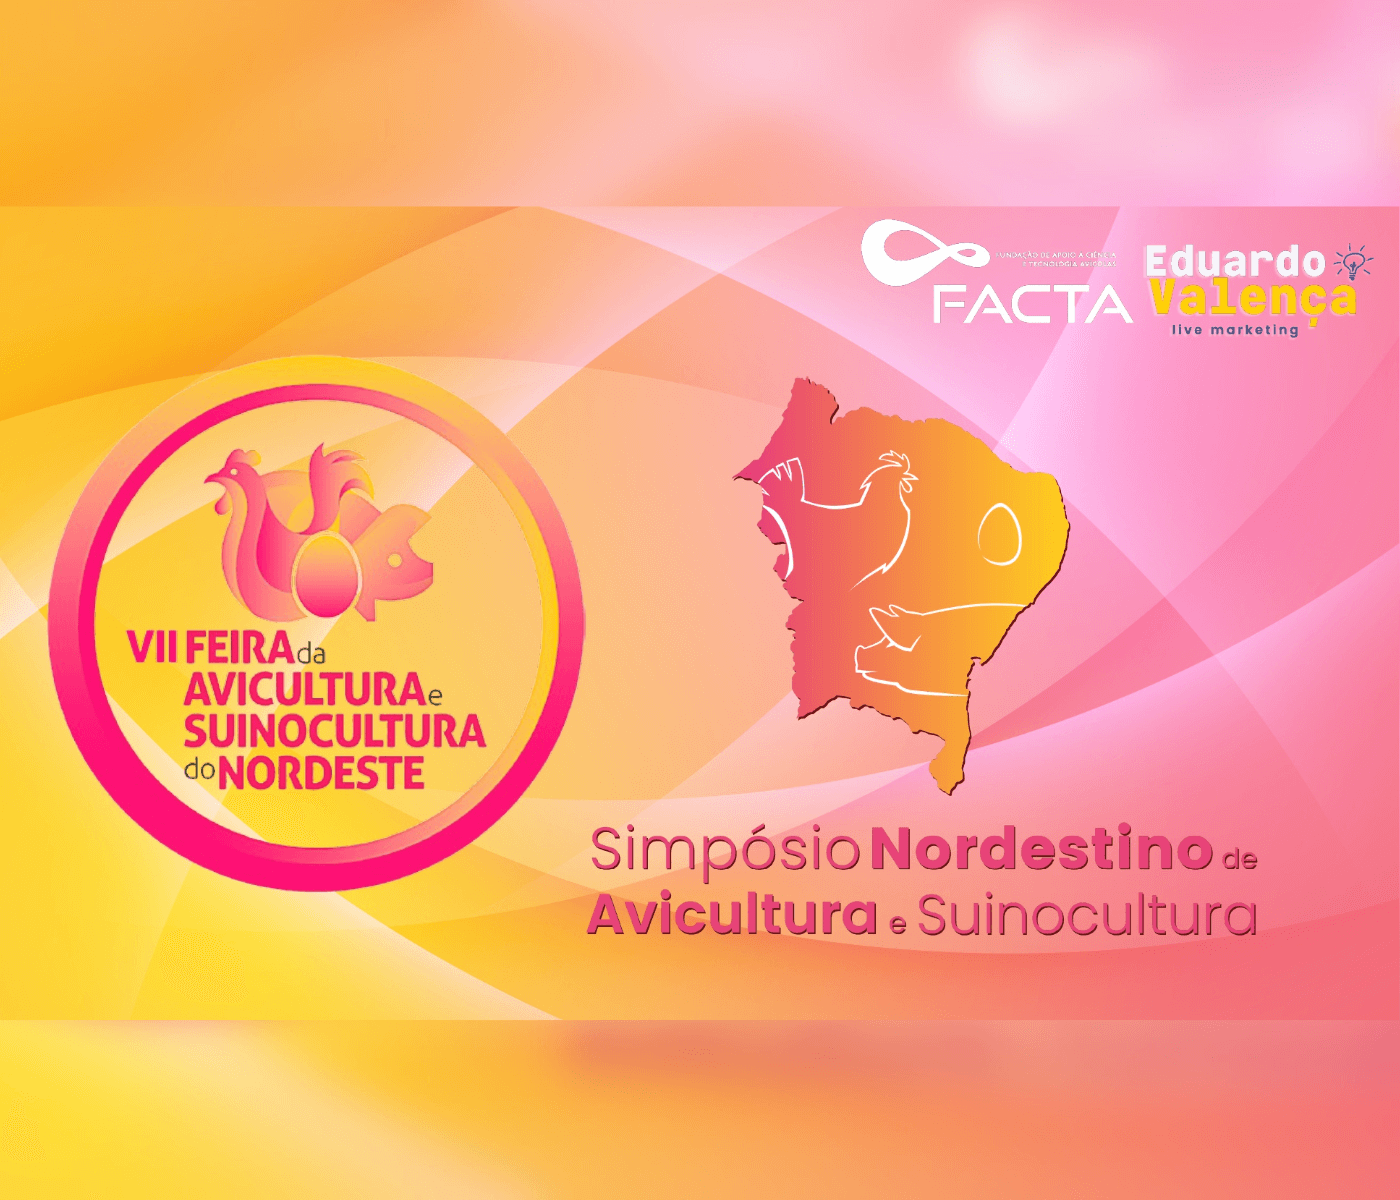 7ª Feira da Avicultura e Suinocultura do Nordeste e Simpósio Nordestino de Avicultura e Suinocultura serão promovidos em setembro, em Pernambuco